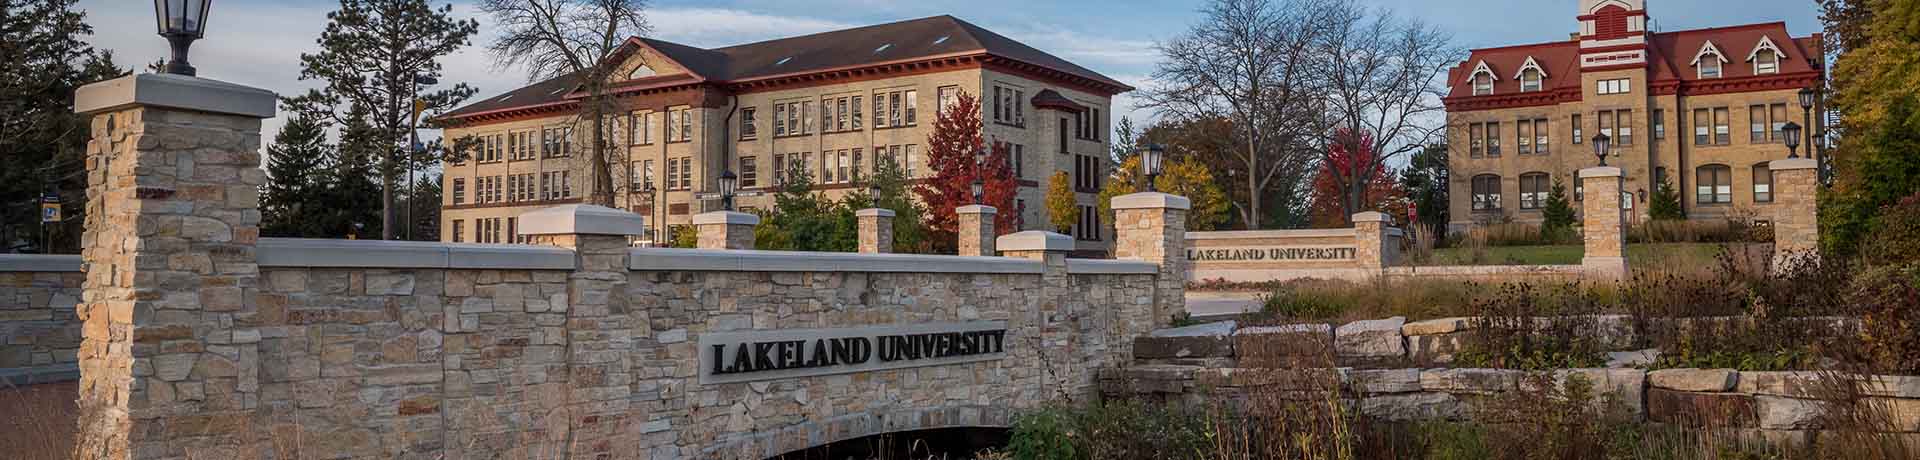 Lakeland University Campus Exterior